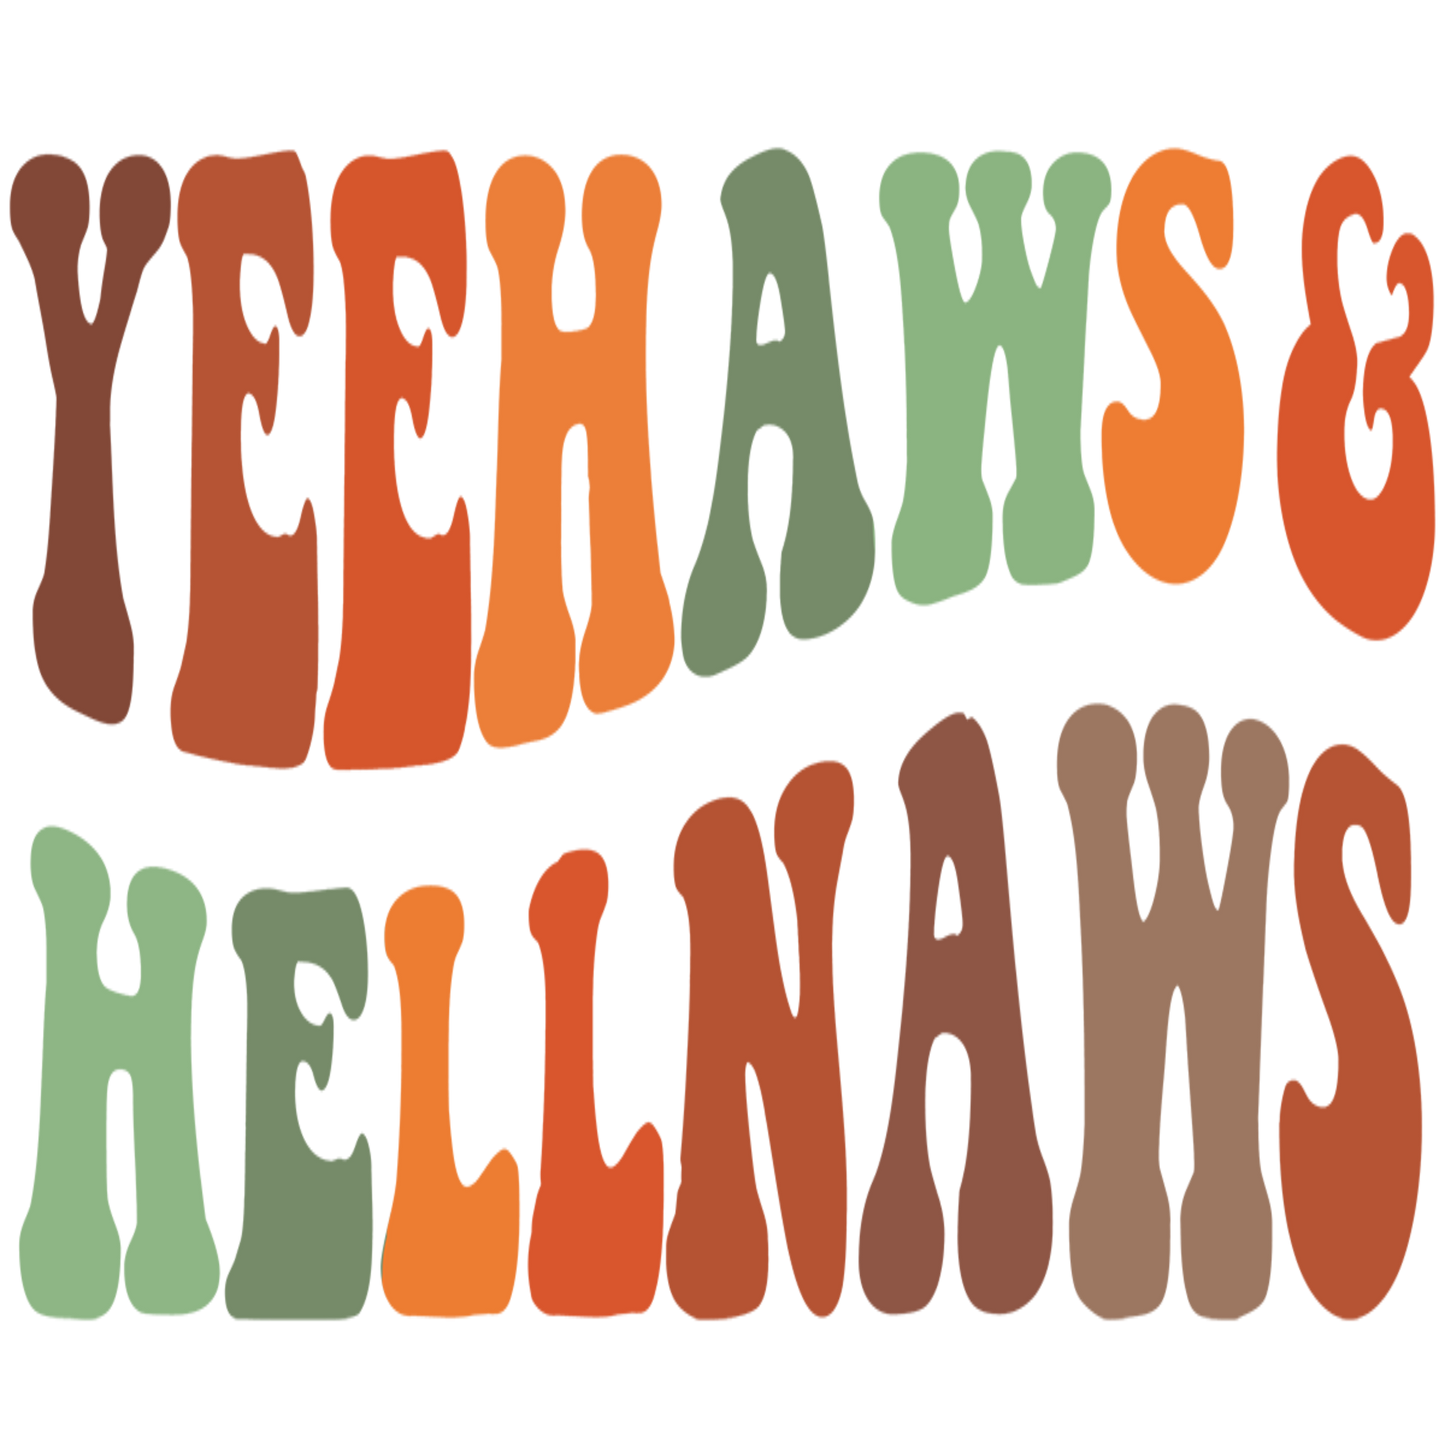 "Yeehaws & Hellnaws" Transfer